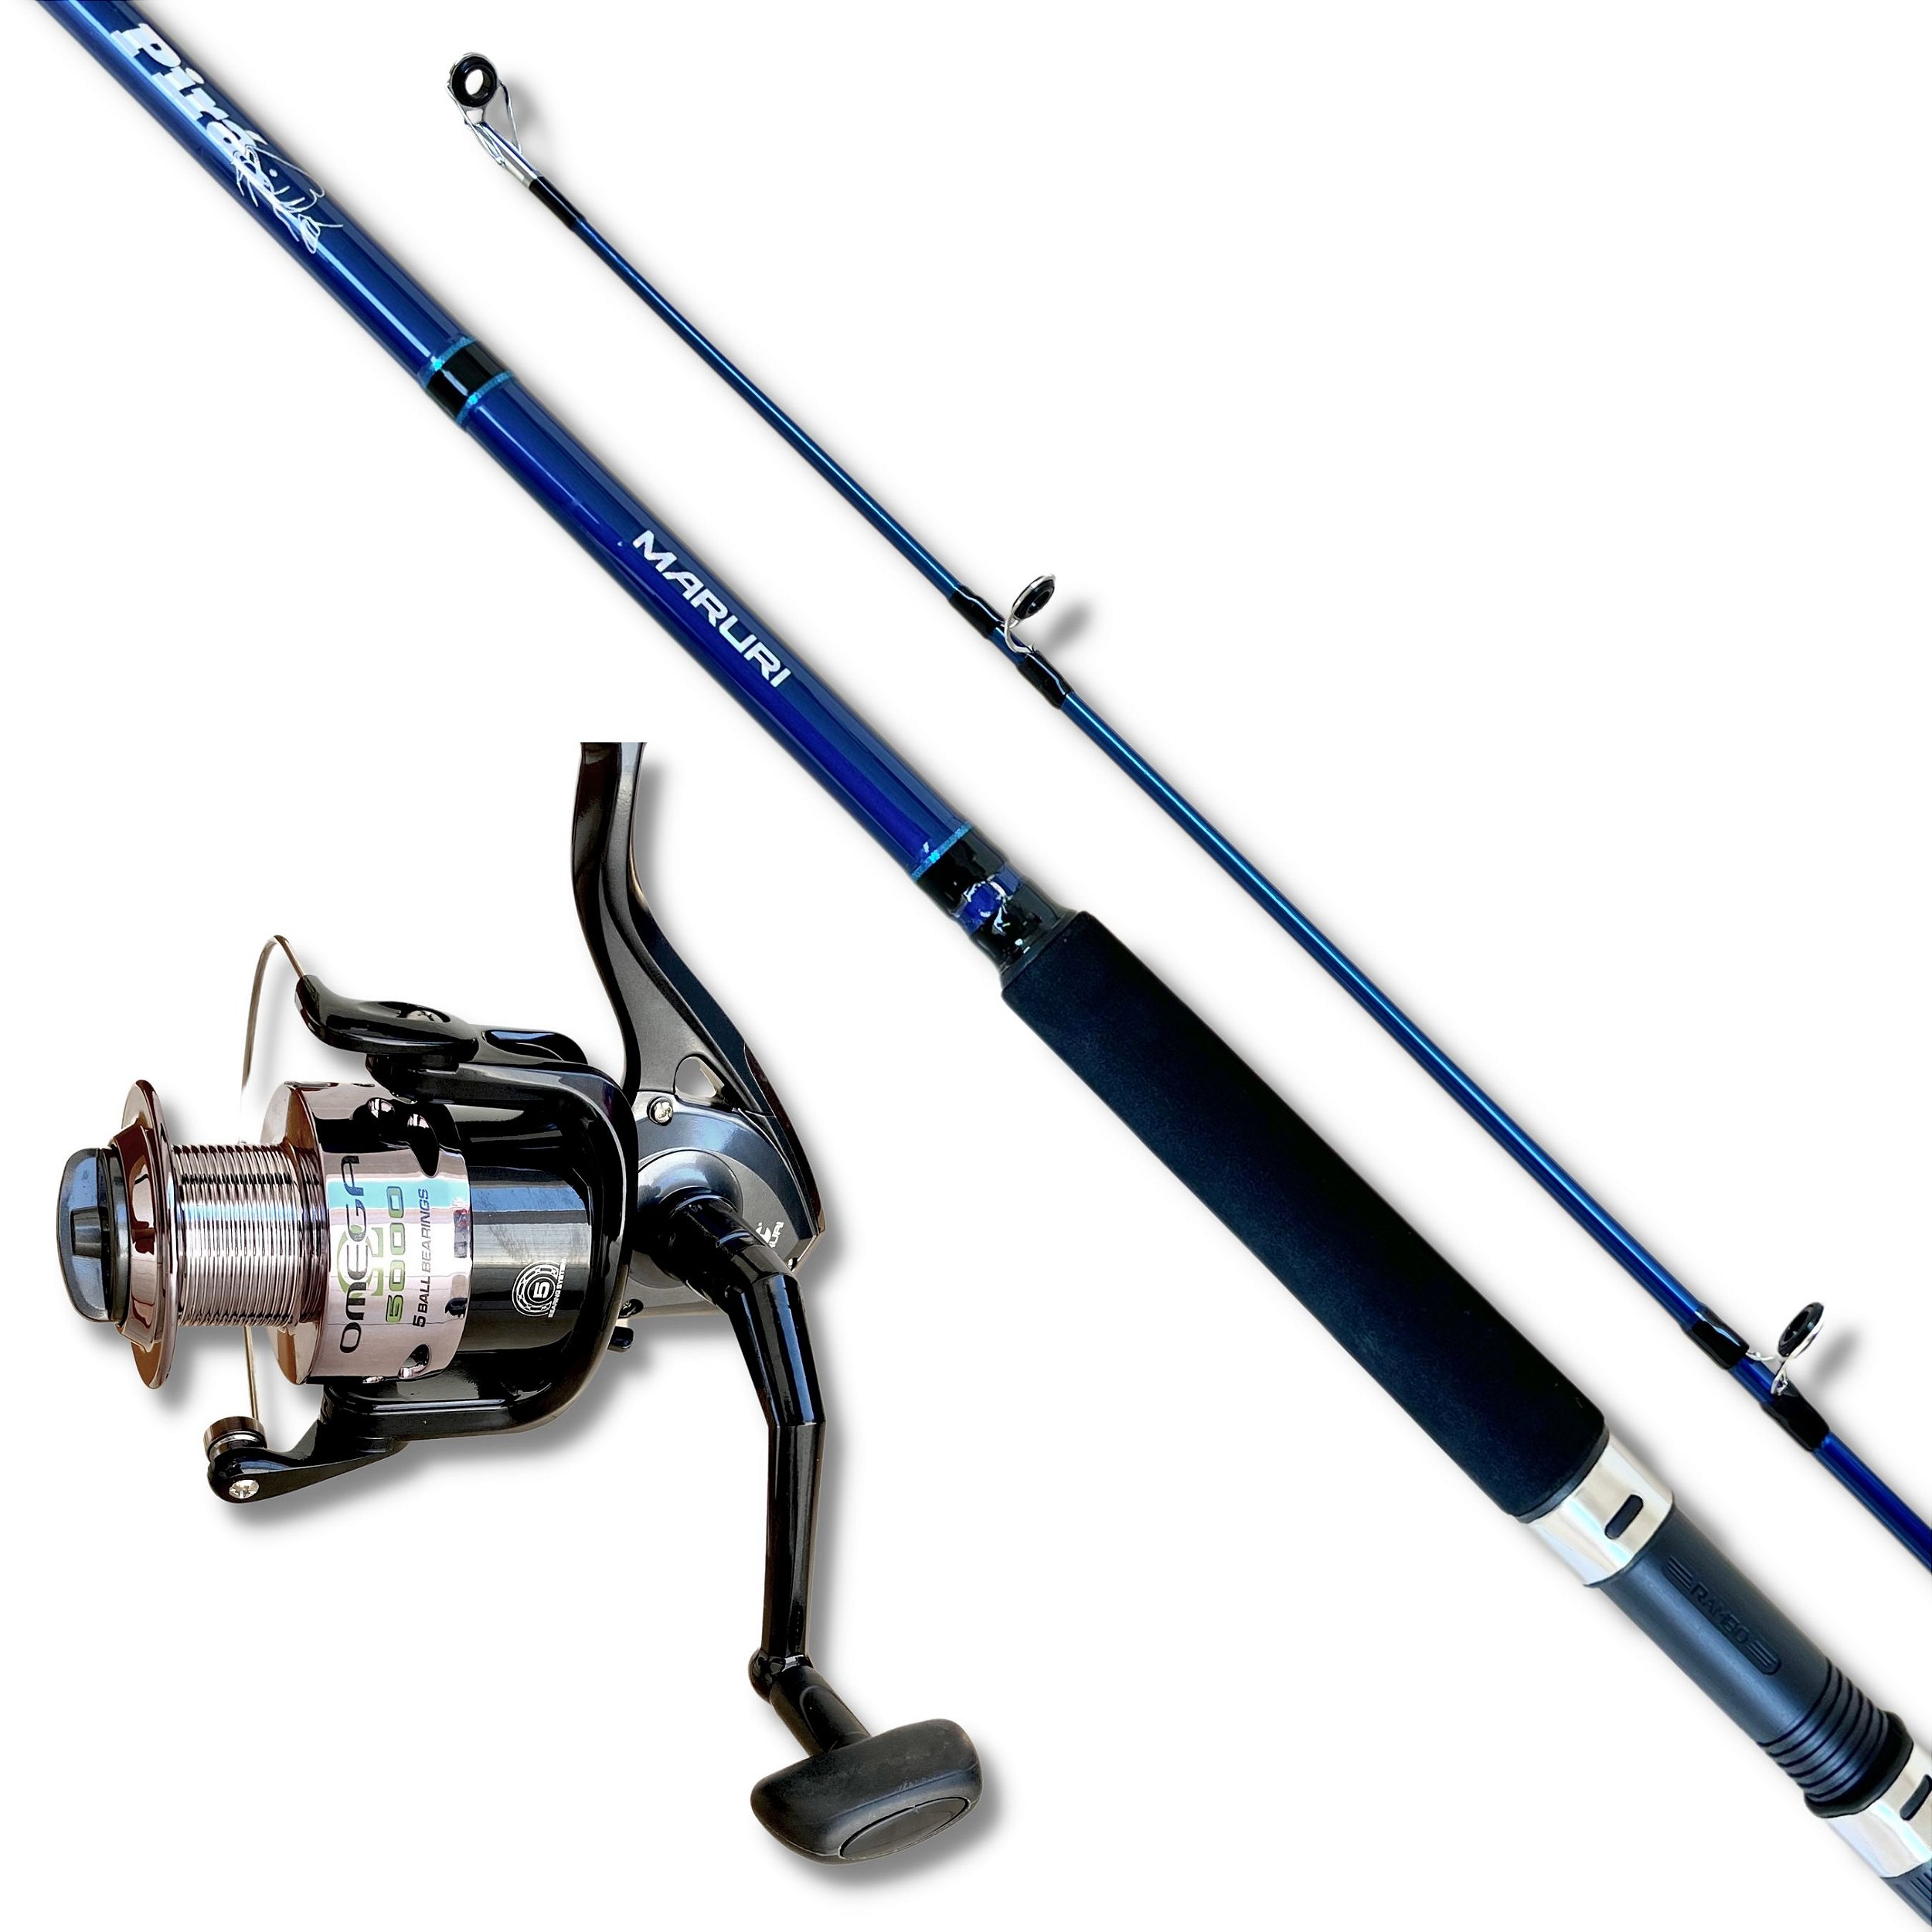 Kit Pesca Média Pesada Vara Pirá 2,40m 60lbs + Molinete Omega 6000 5r -  Solfish - Qualidade Para o Seu Esporte!